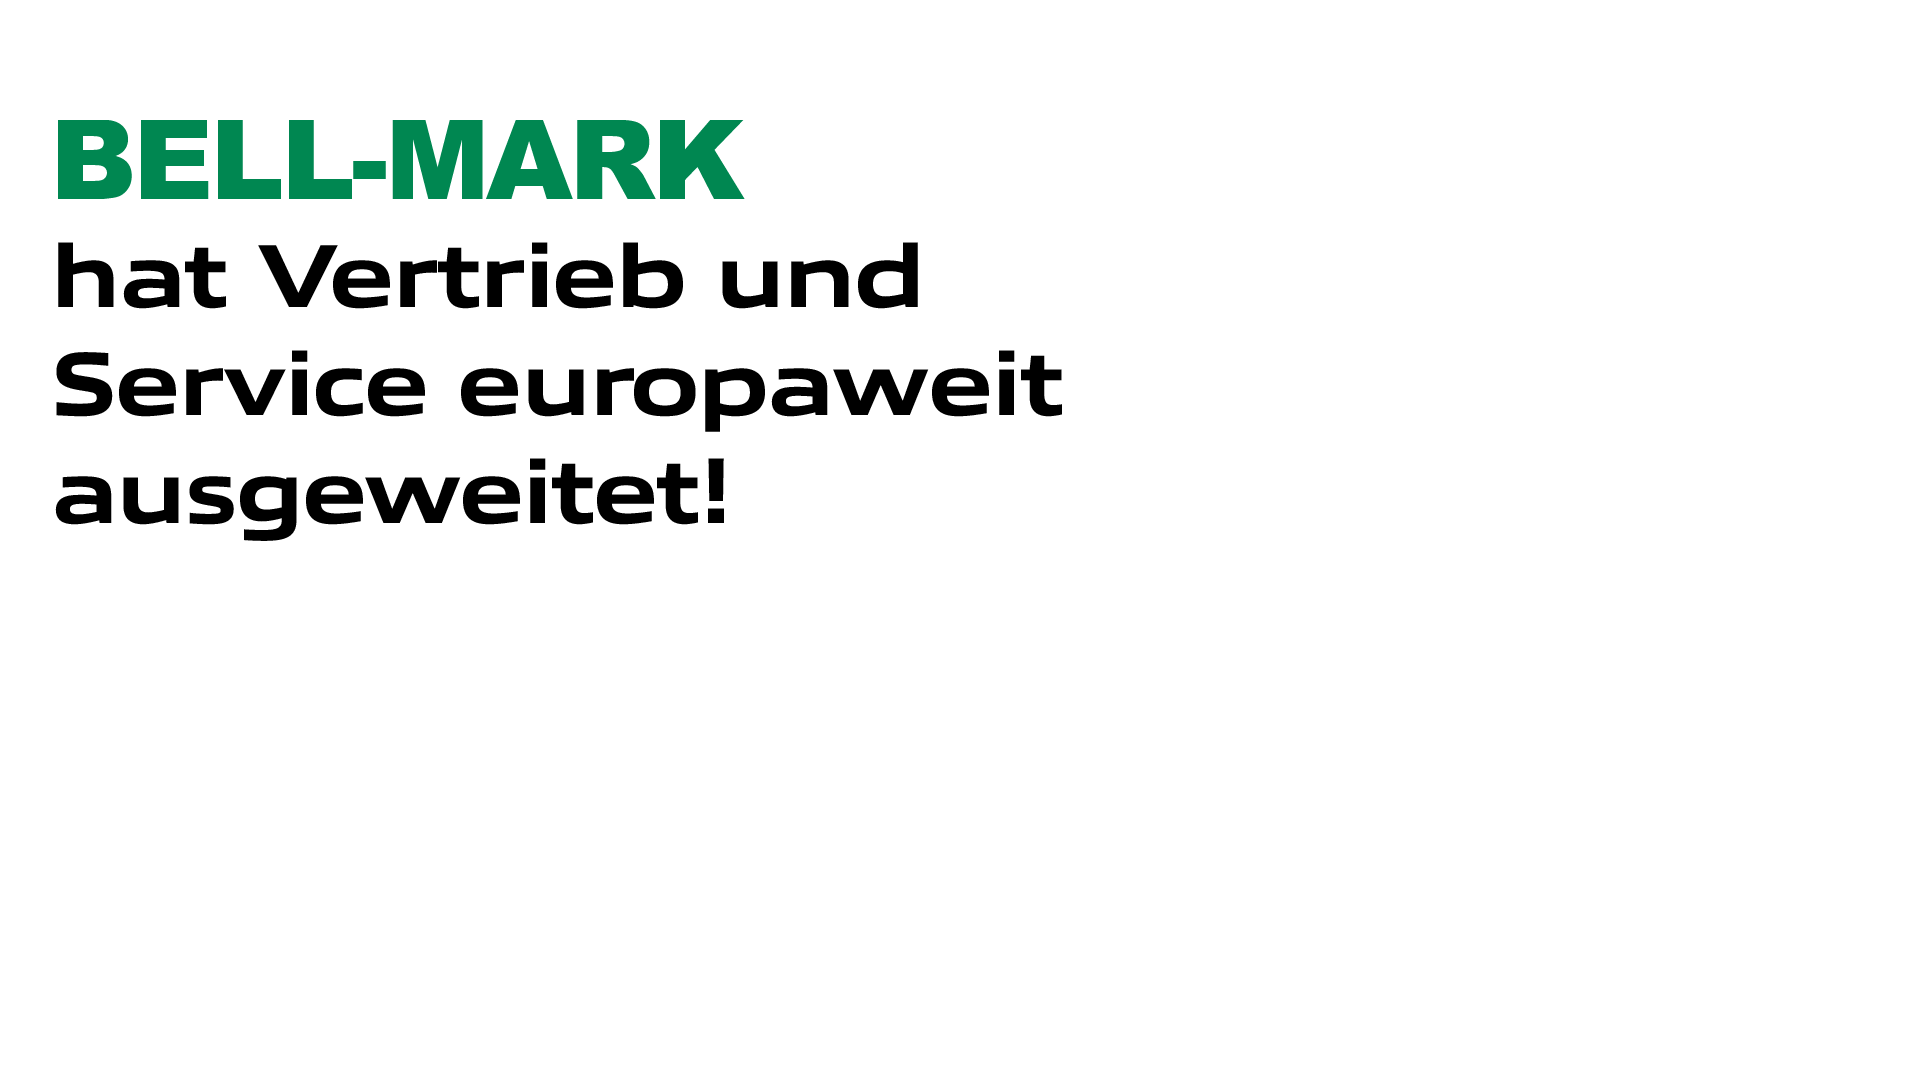 BELL-MARK erweitert Vertrieb und Service in ganz Europa!